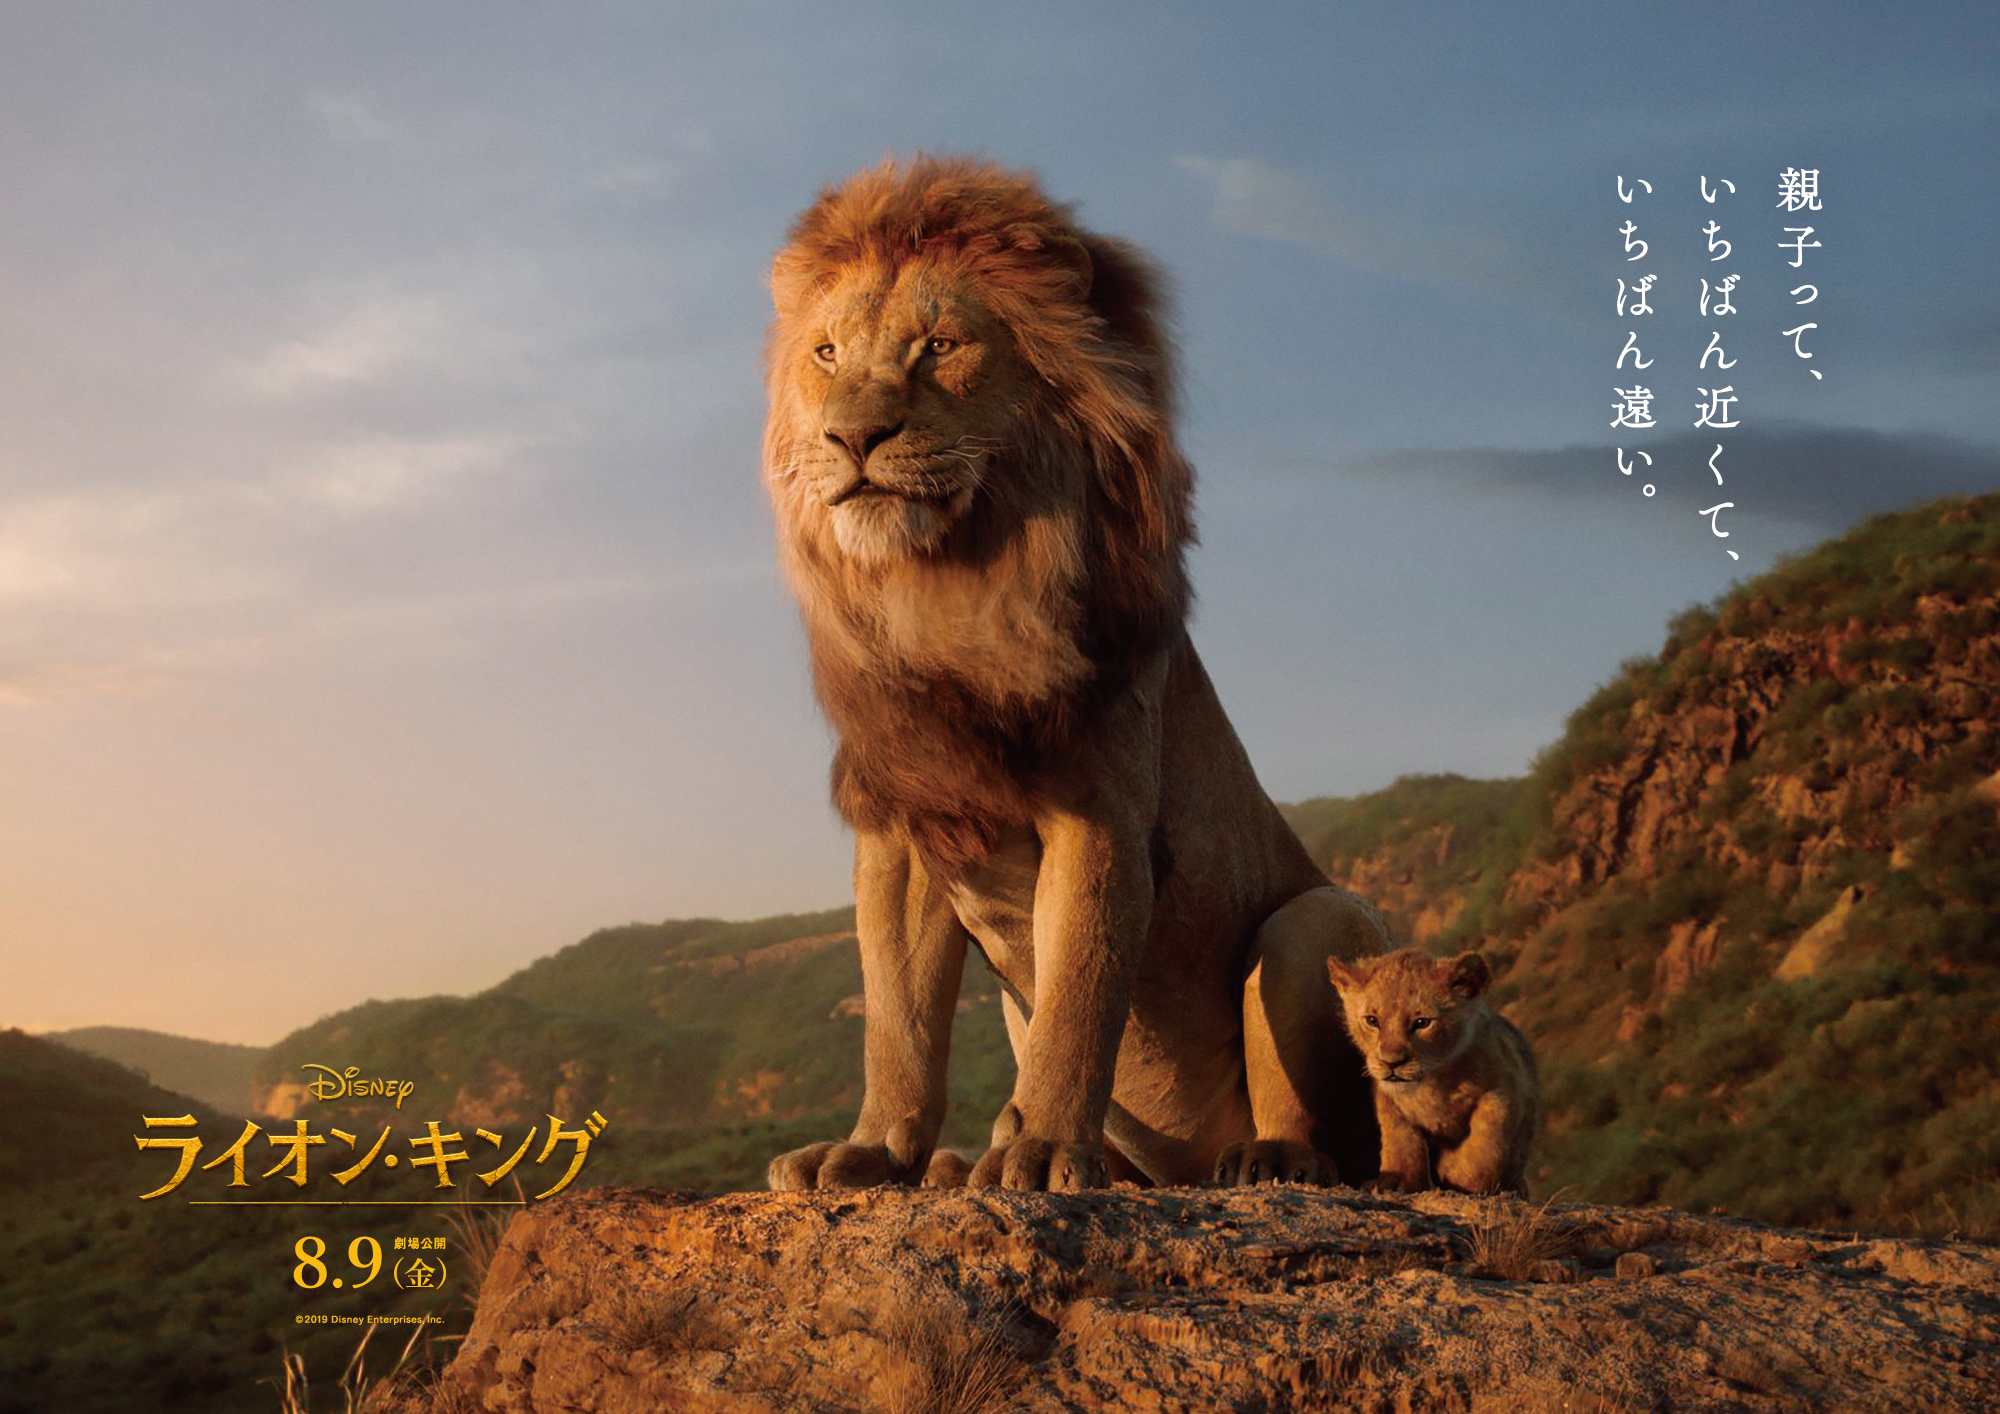 映画 ライオン キング の 深い メッセージポスターが日本中を感動でジャック ウォルト ディズニー ジャパン株式会社のプレスリリース